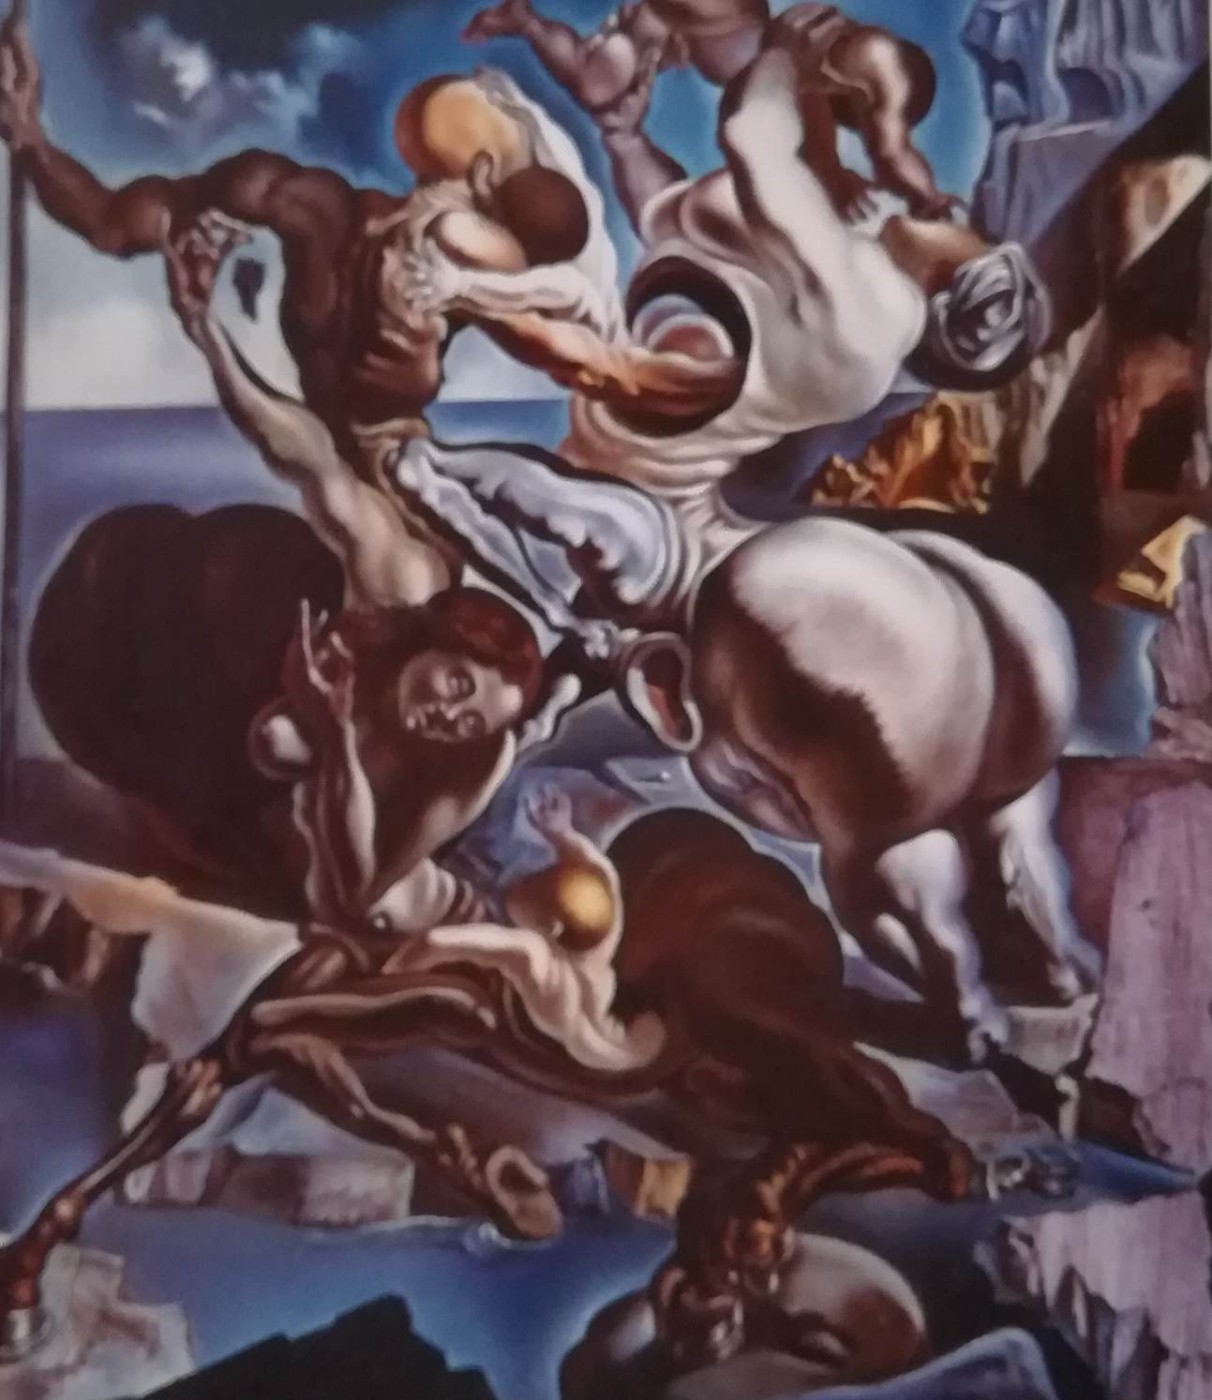 Family of marsupial centaurs - Salvador Dalì, 1940